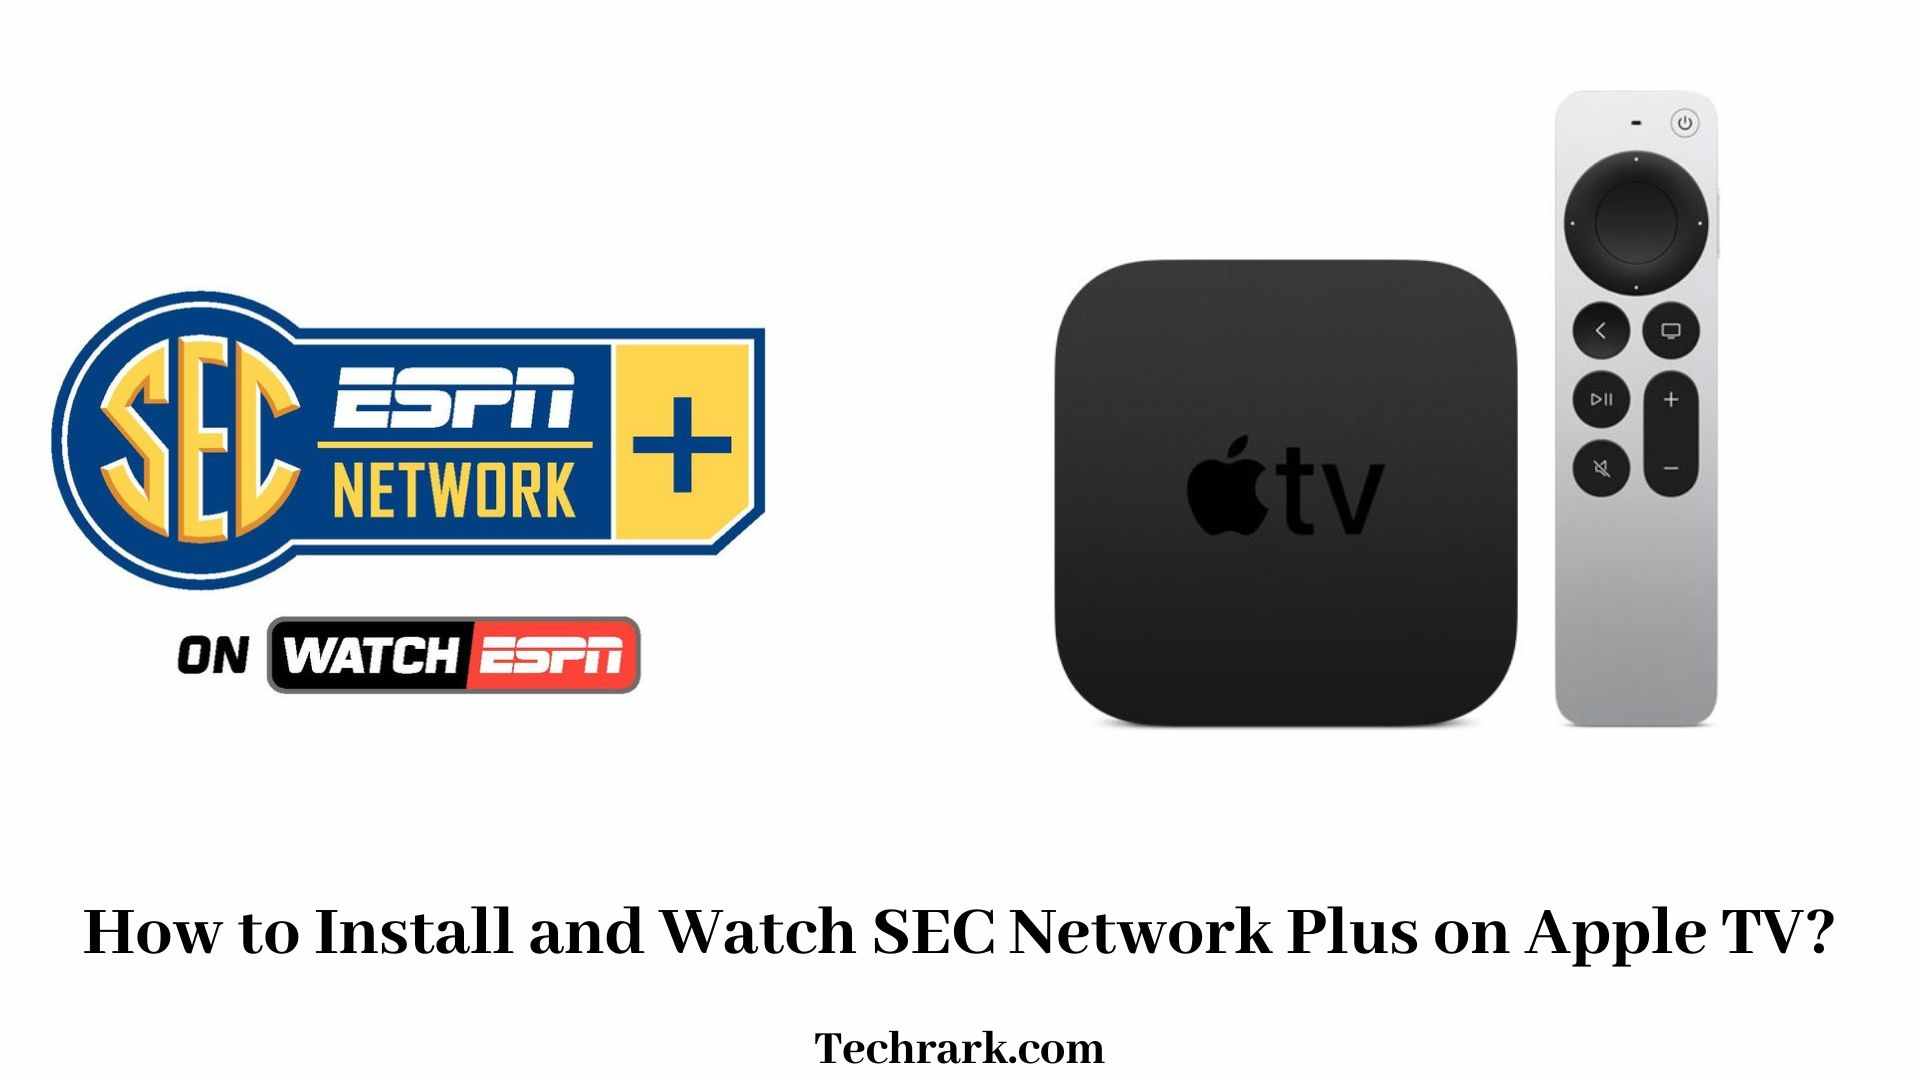 SEC Network Plus on Apple TV